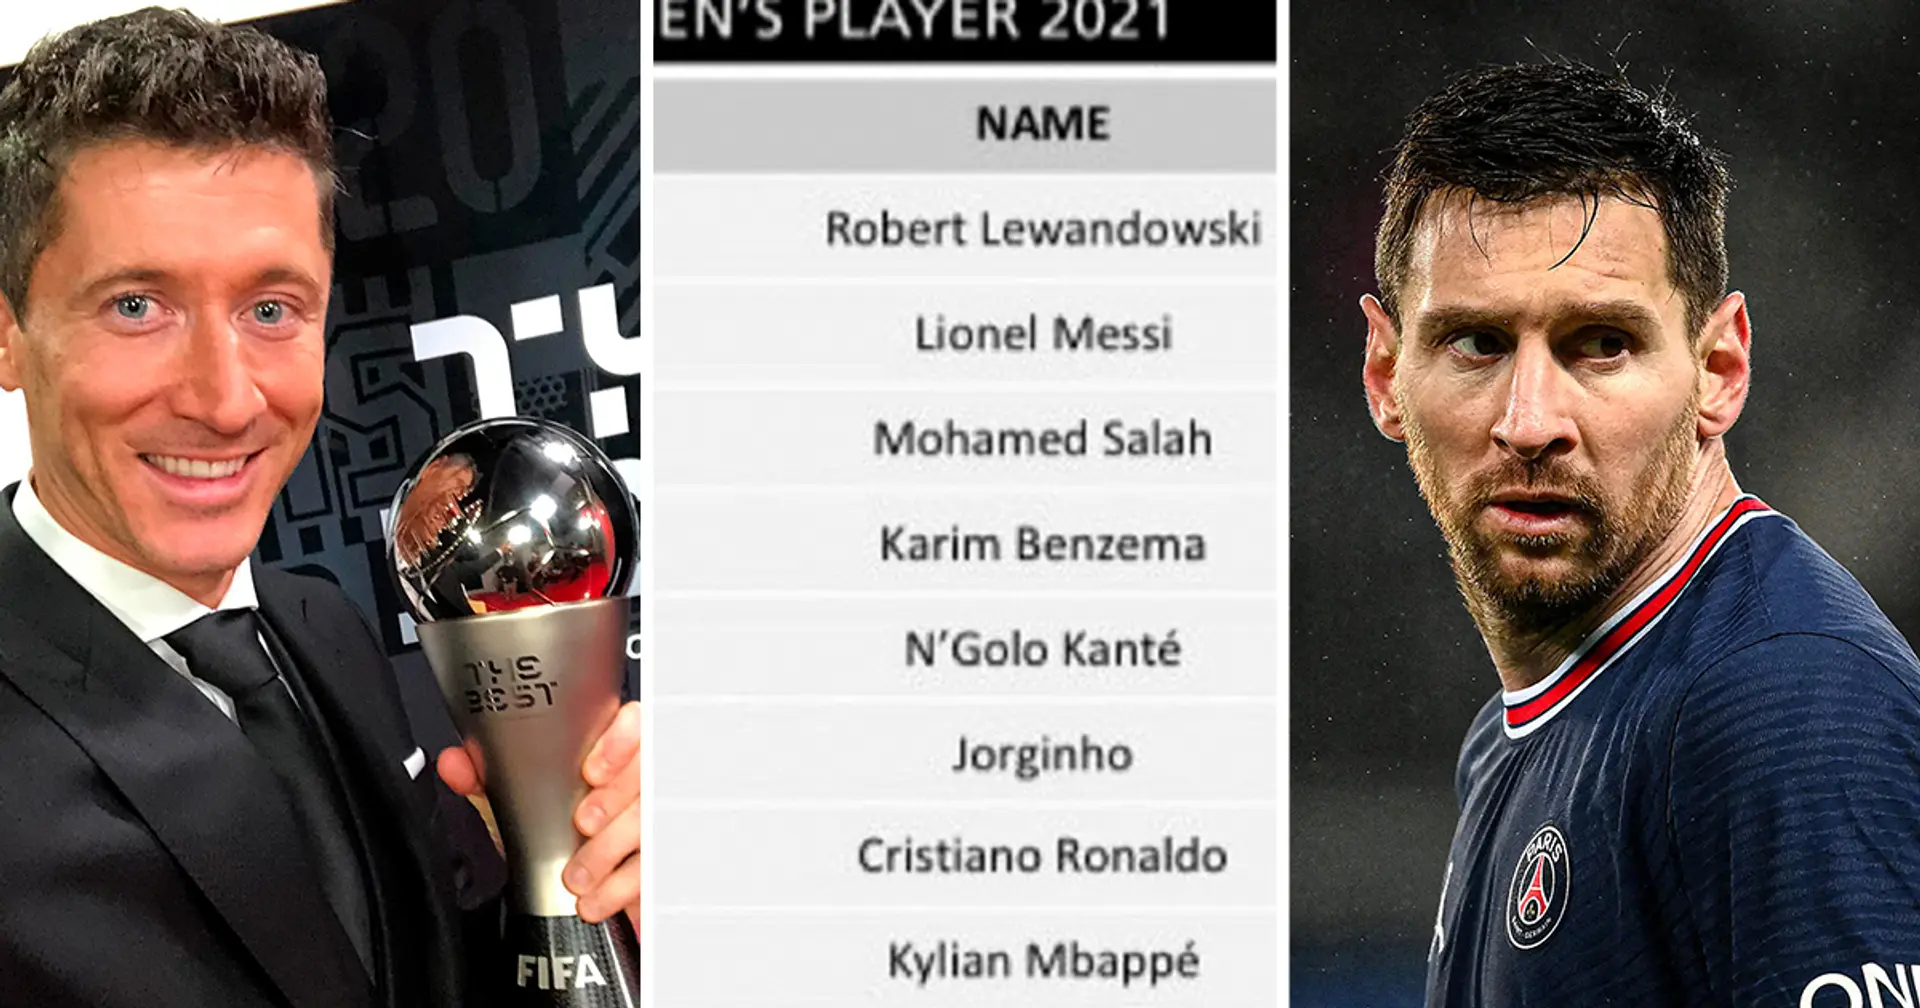 Messi perd contre Lewandowski par une faible marge alors que les résultats du vote " The Best " sont révélés dans leur intégralité